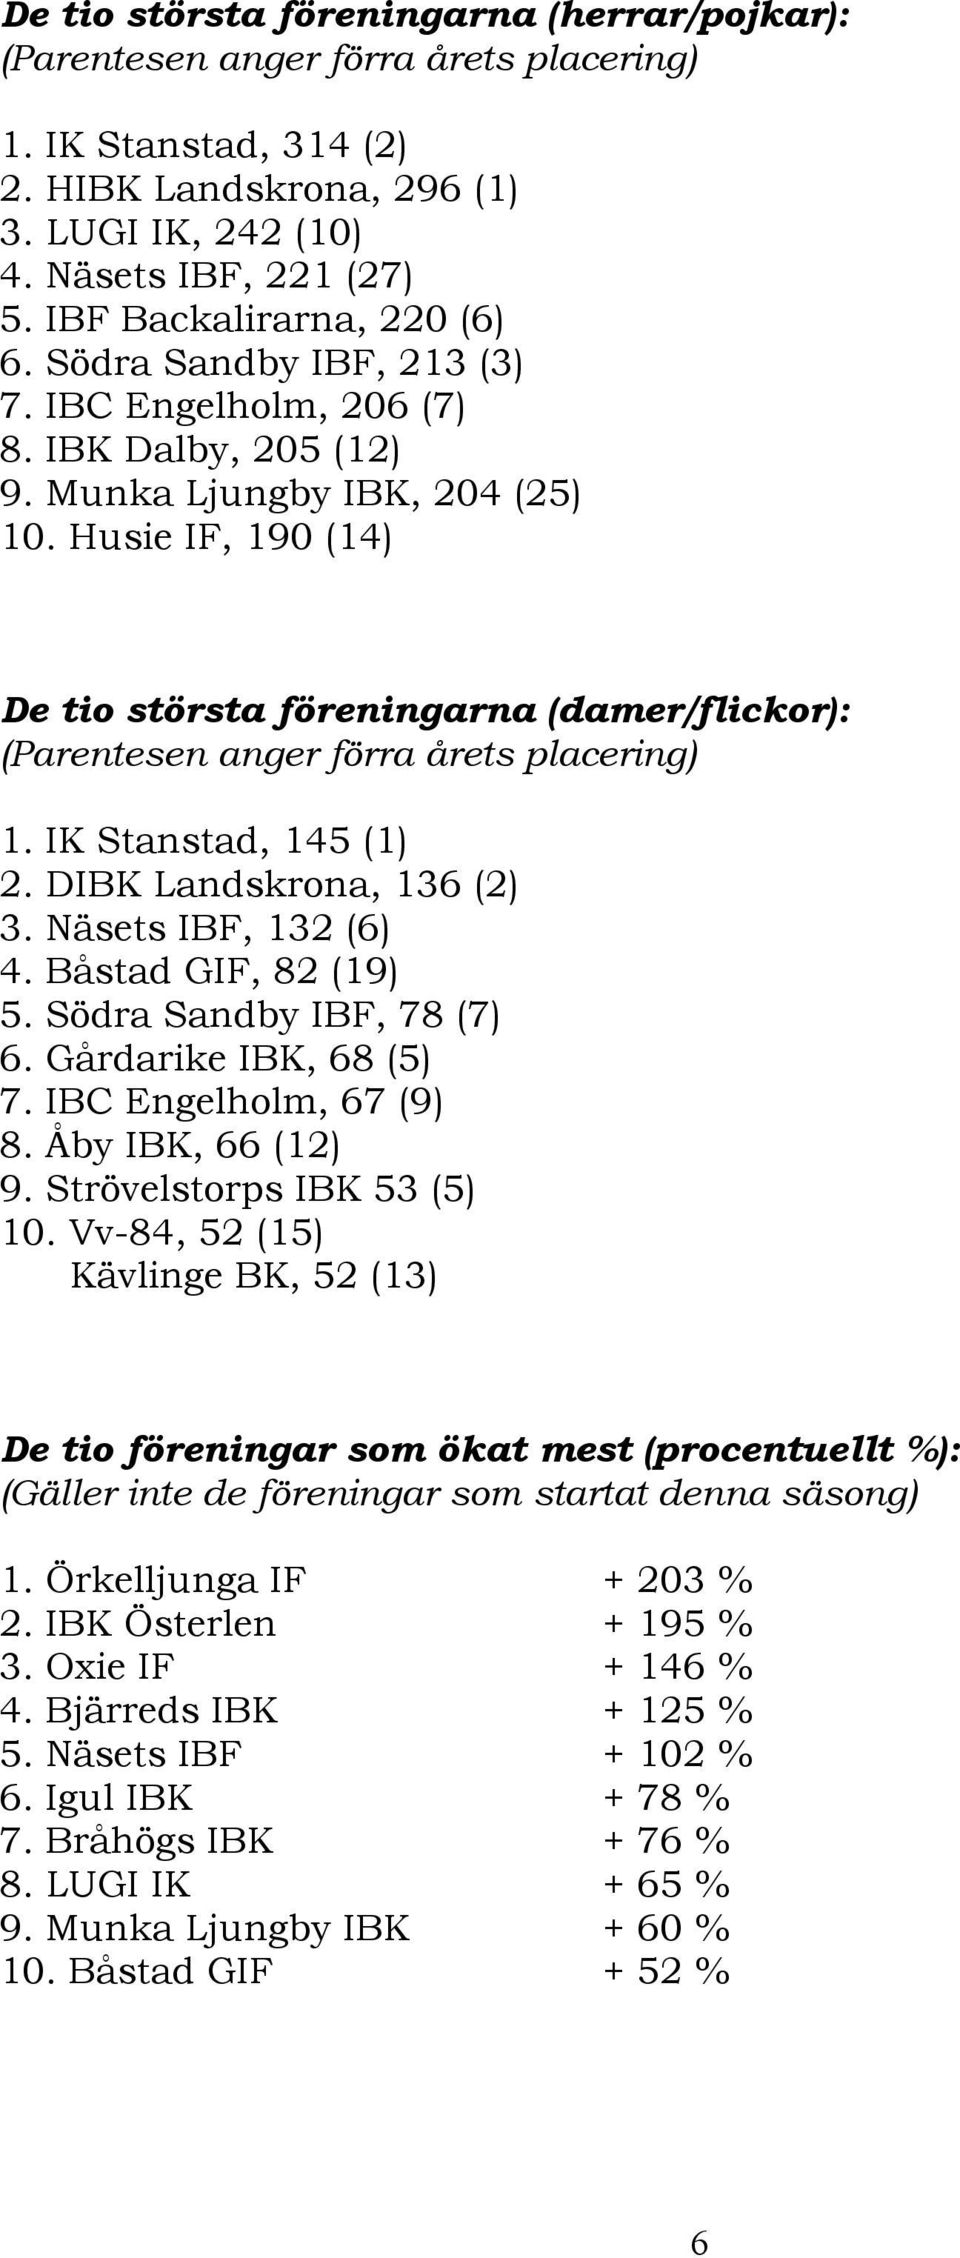 Husie IF, 190 (14) De tio största föreningarna (damer/flickor): (Parentesen anger förra årets placering) 1. IK Stanstad, 145 (1) 2. DIBK Landskrona, 136 (2) 3. Näsets IBF, 132 (6) 4.